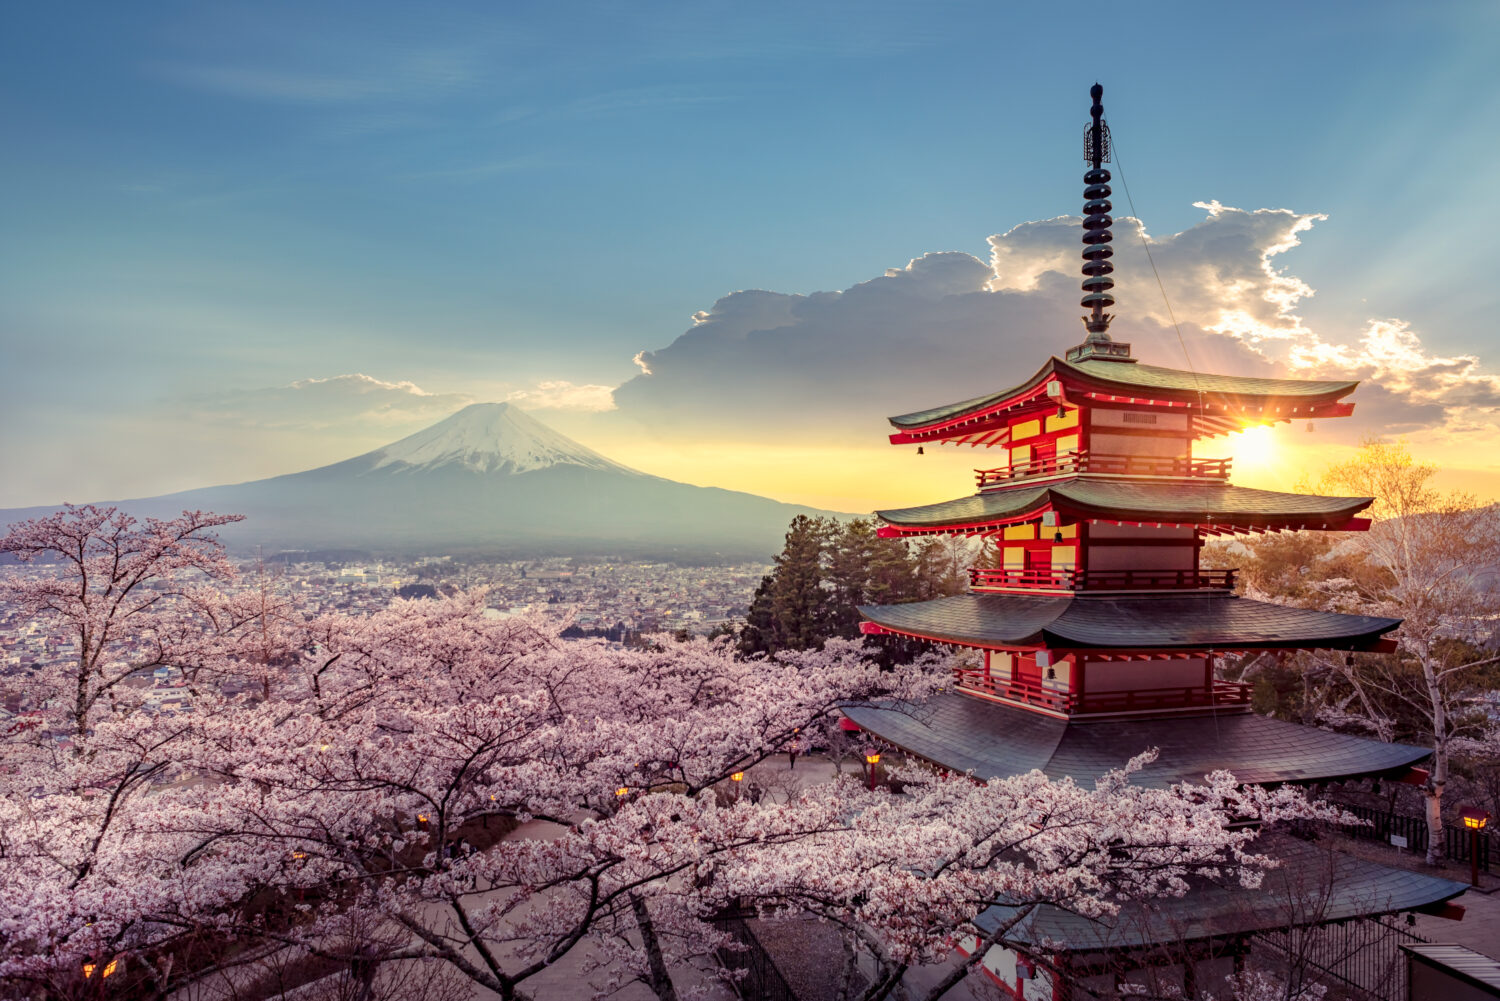 Quando la bellezza incontra l'impermanenza attraverso i sakura in fiore -   - Vivere lo Yoga Eventi